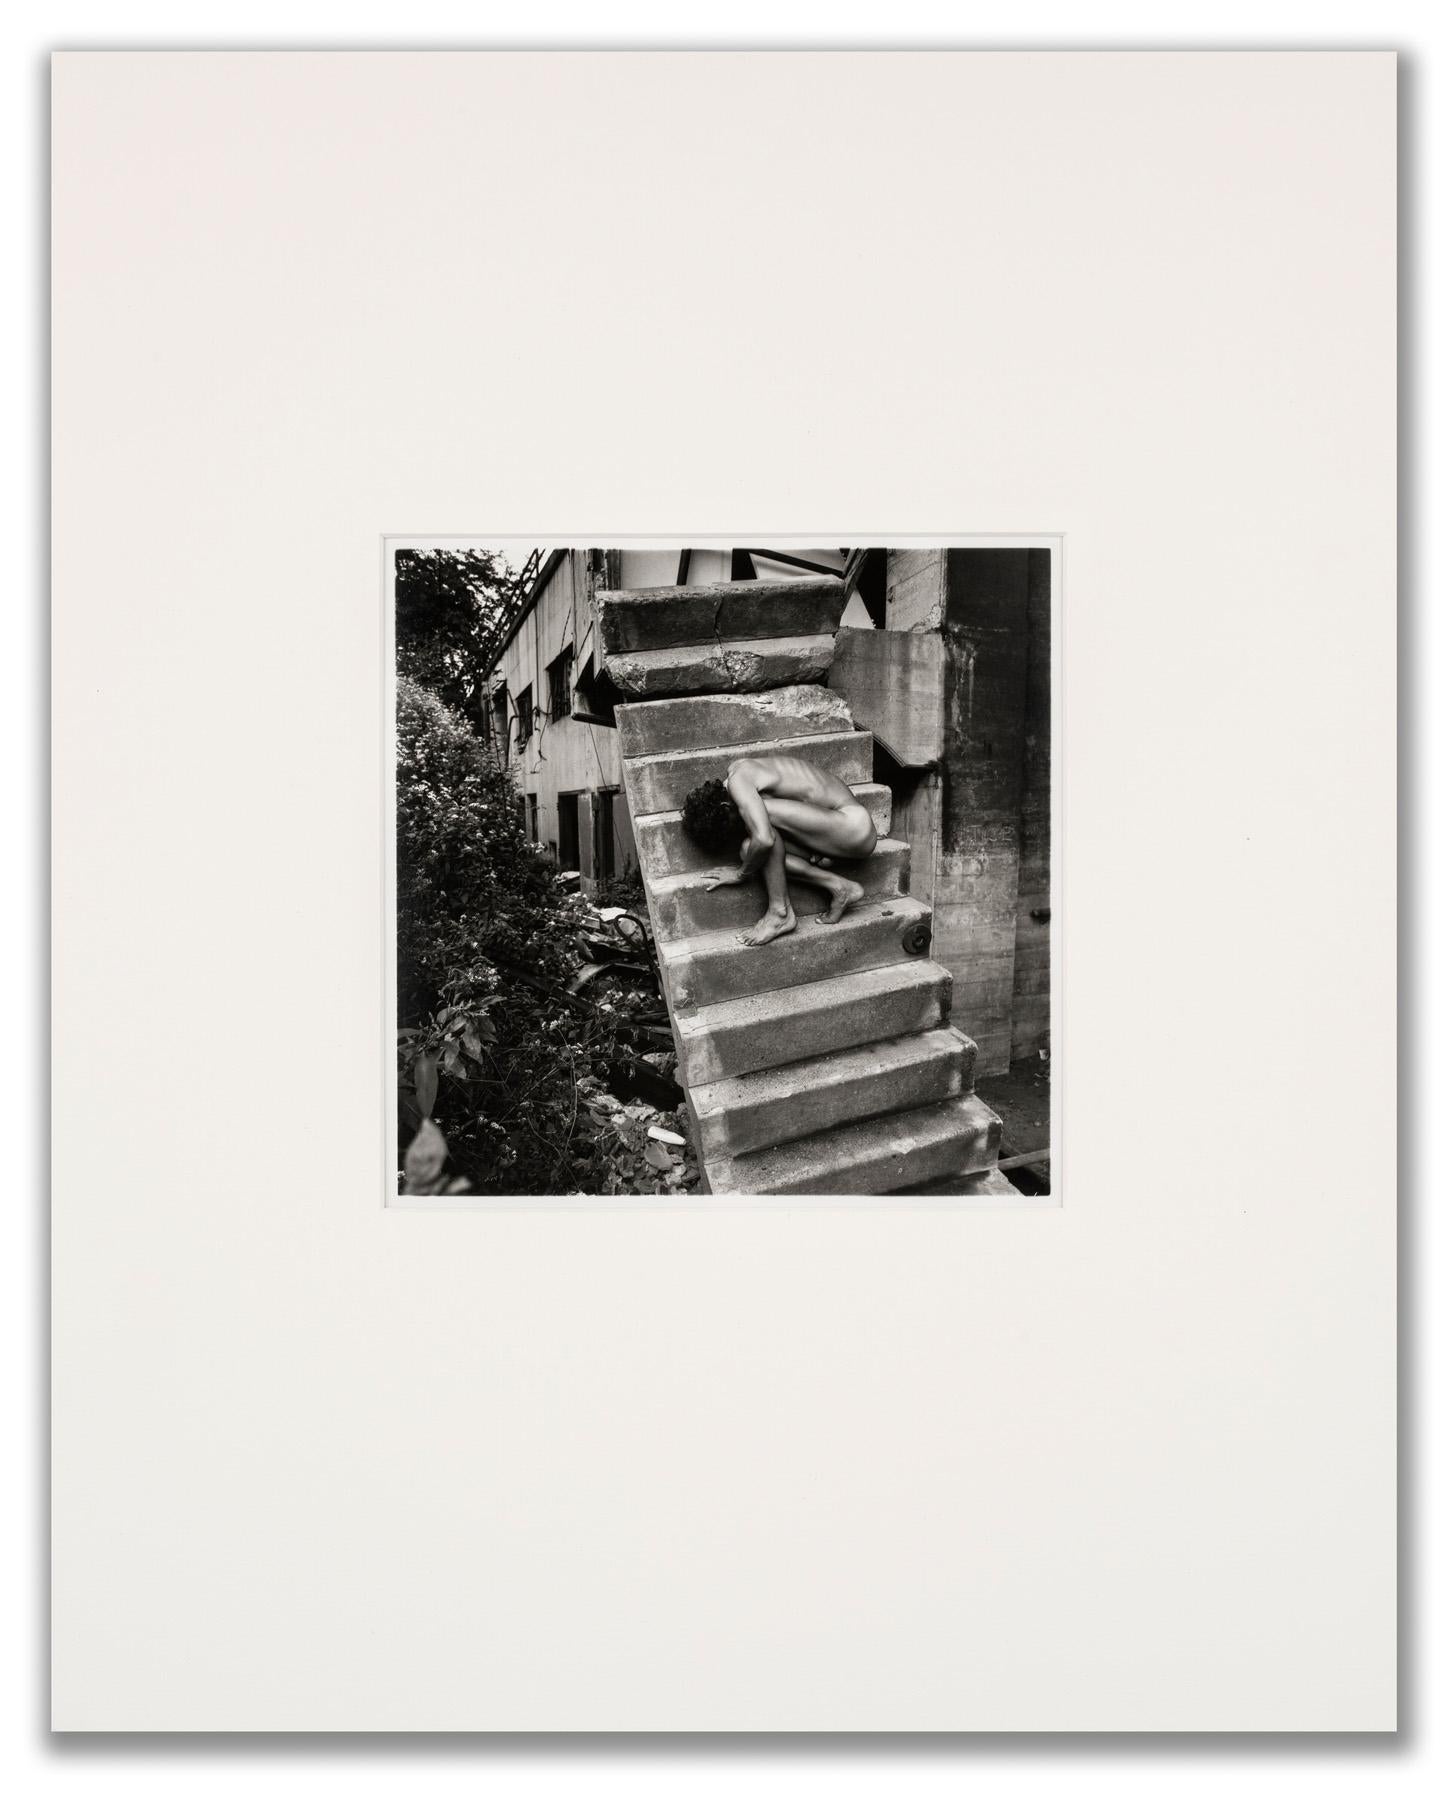 Nackt auf der Treppe (Surrealismus), Photograph, von Arthur Tress